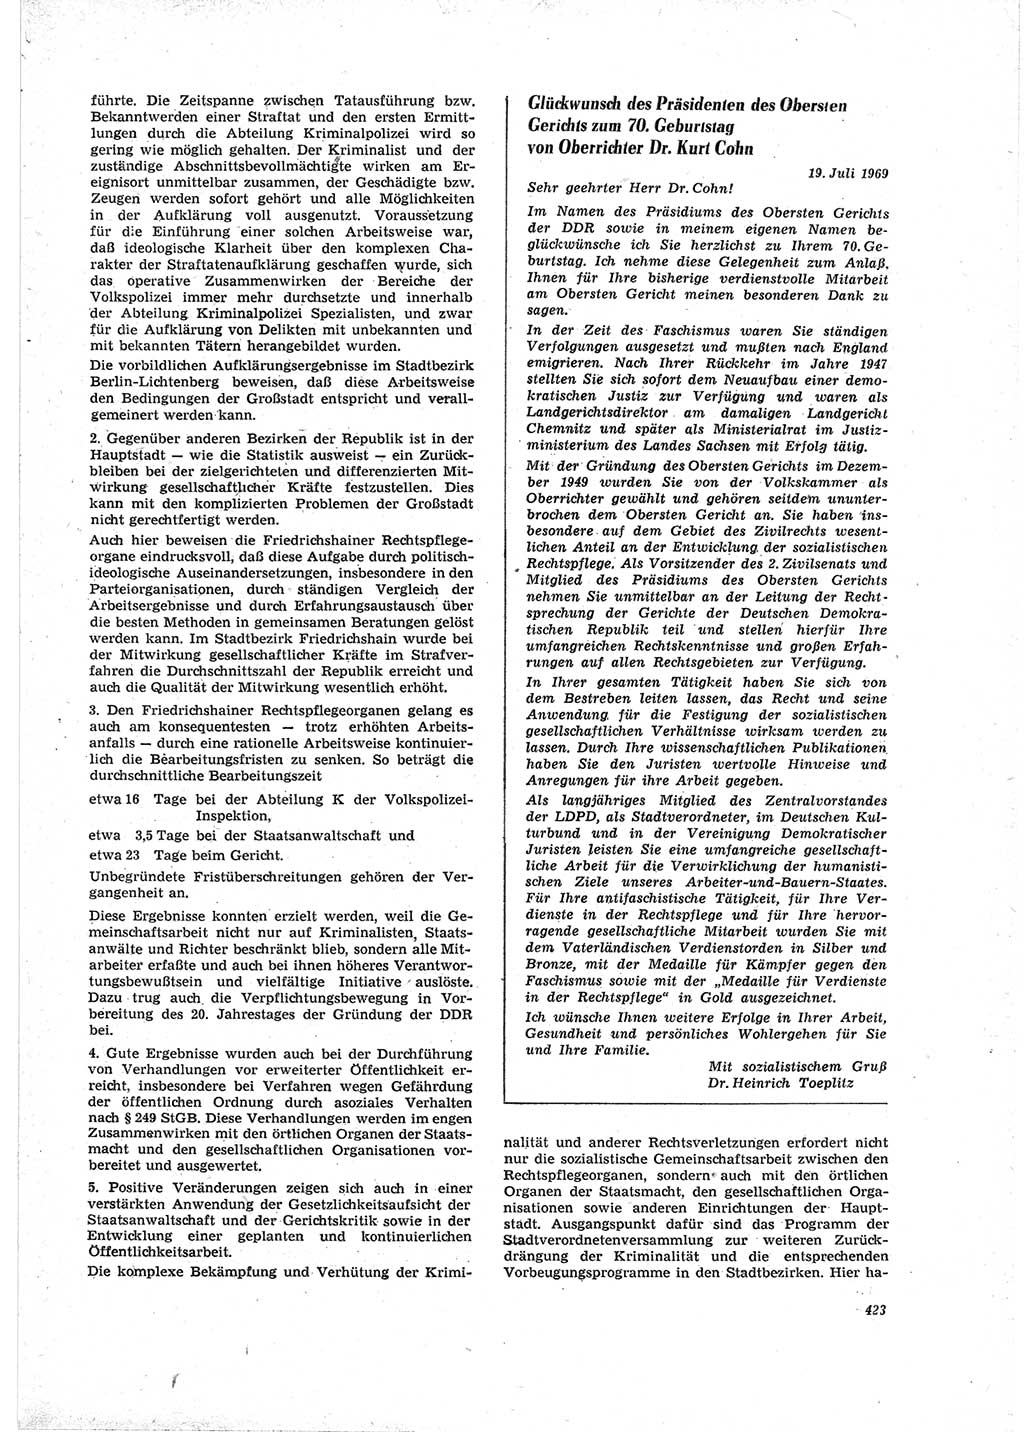 Neue Justiz (NJ), Zeitschrift für Recht und Rechtswissenschaft [Deutsche Demokratische Republik (DDR)], 23. Jahrgang 1969, Seite 423 (NJ DDR 1969, S. 423)